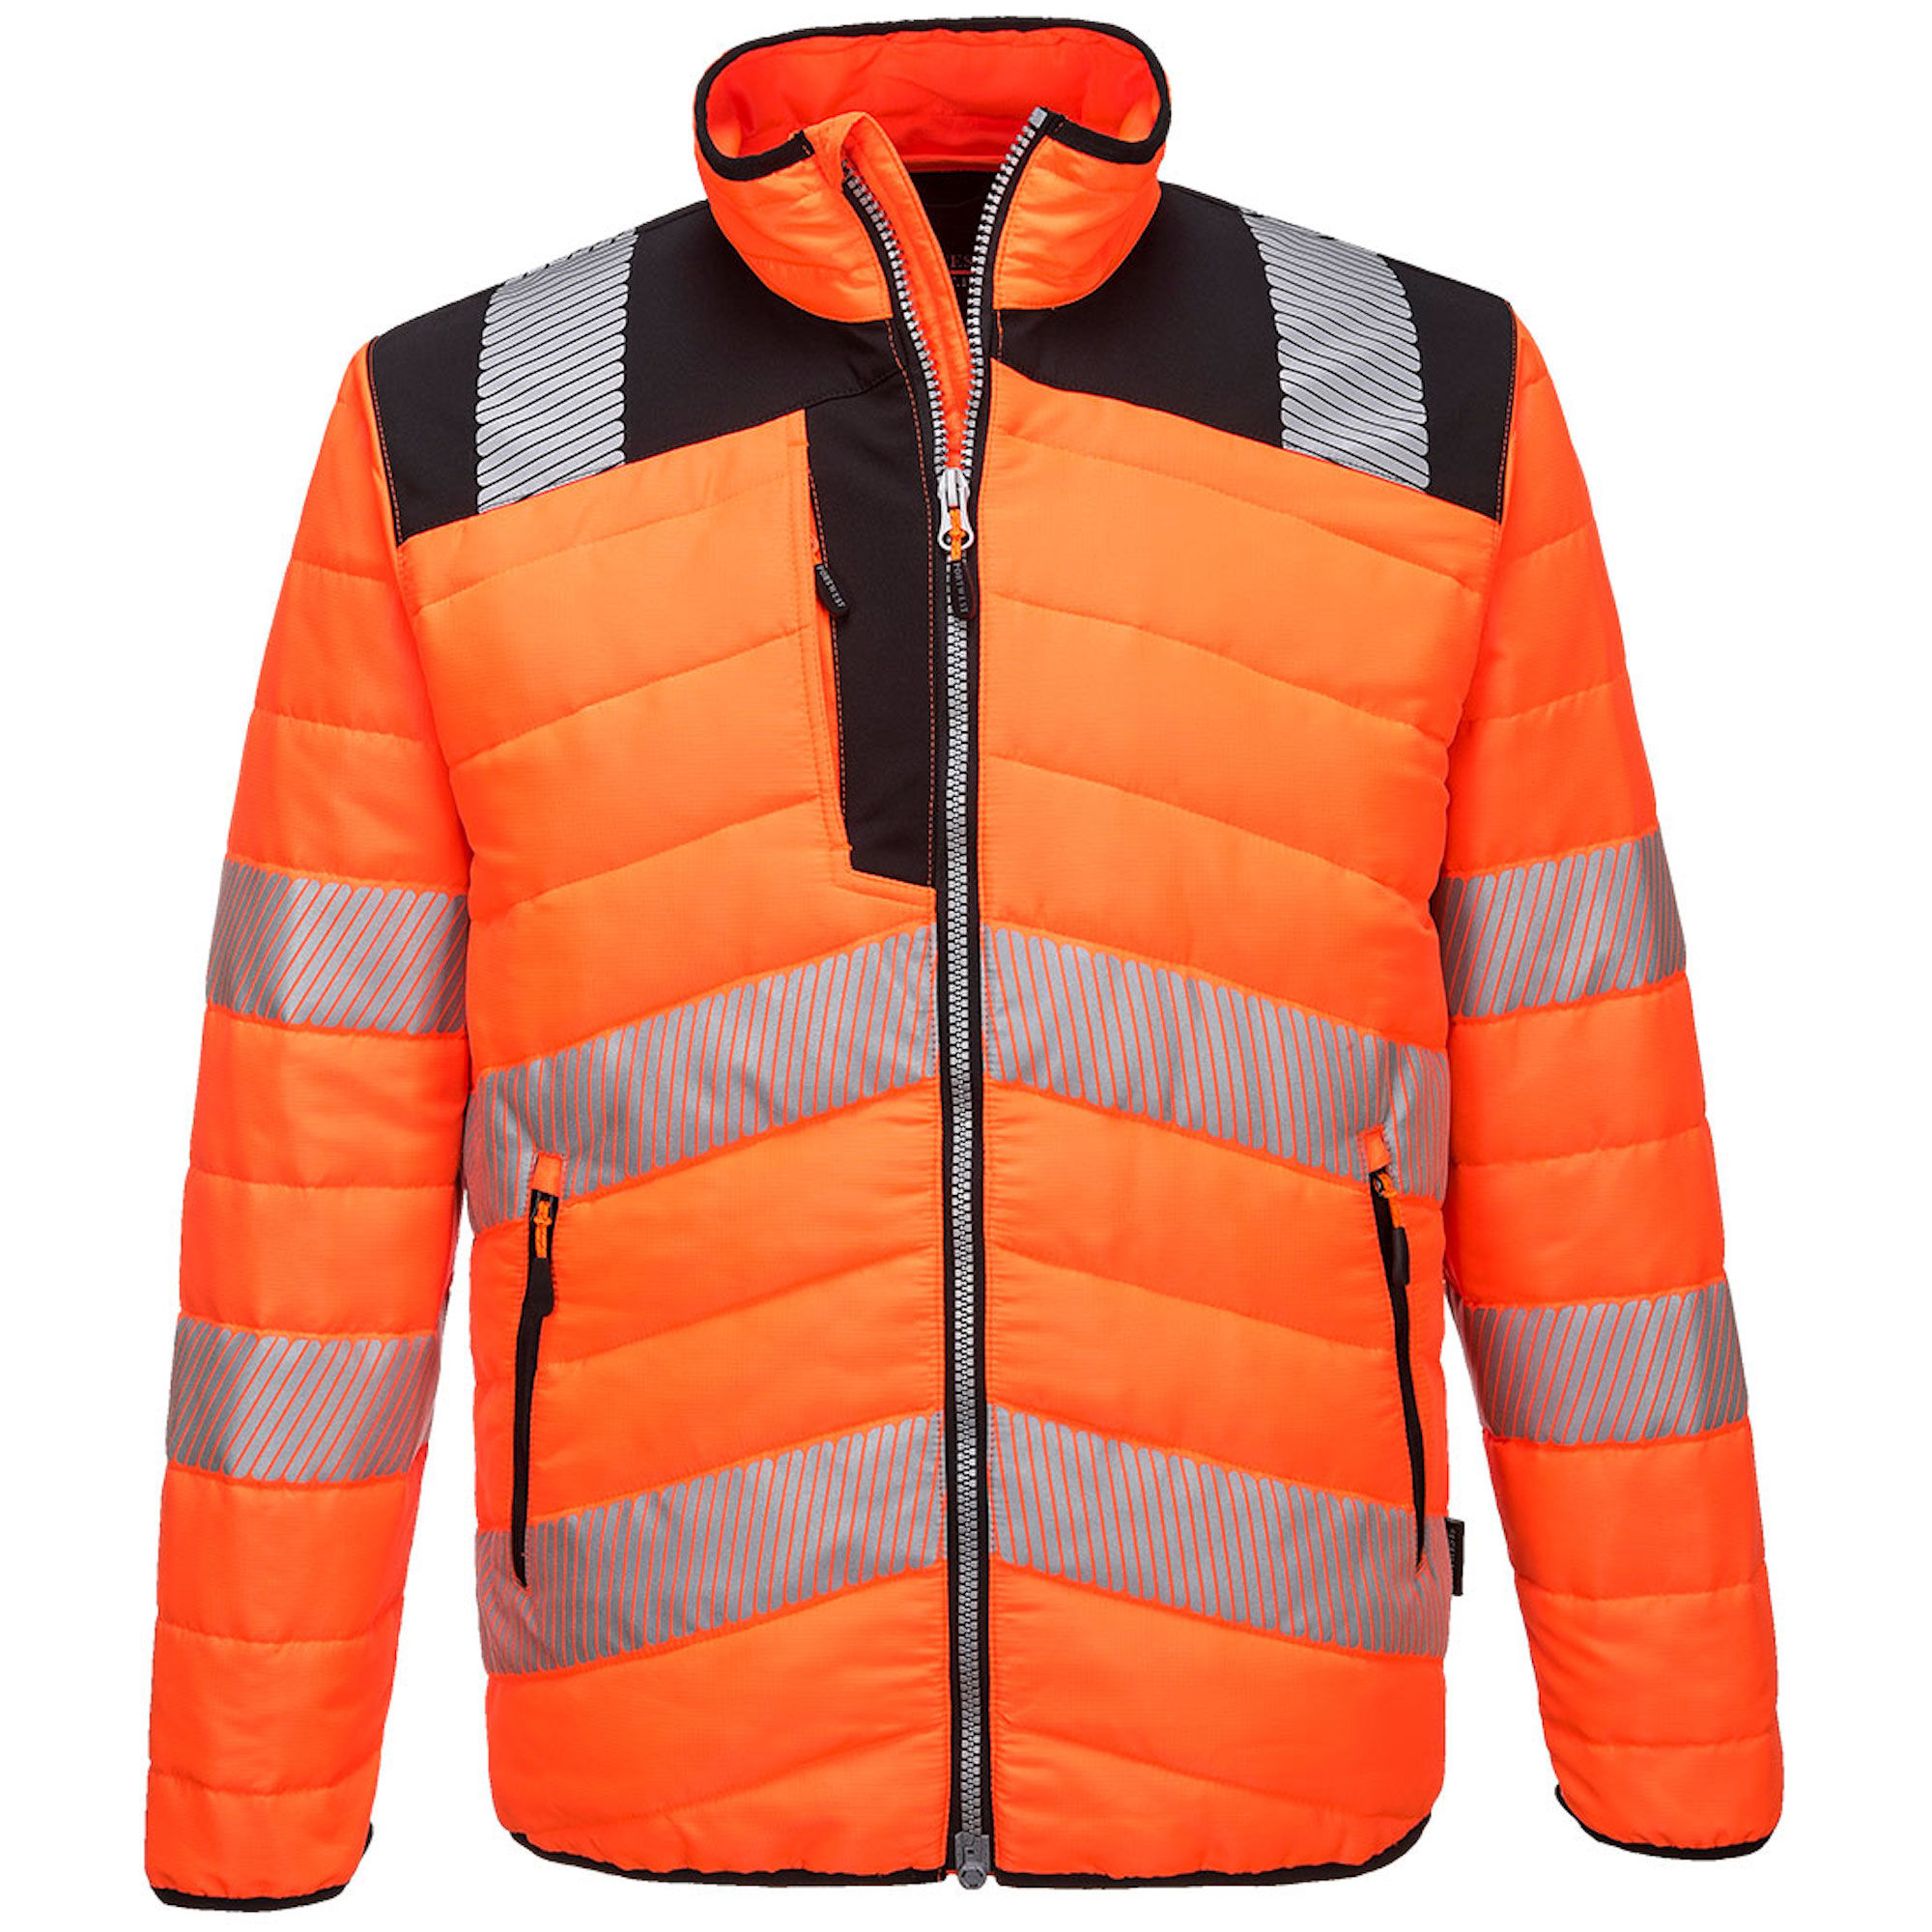 Portwest Hi-Vis Baffle Jacket Orange/Black